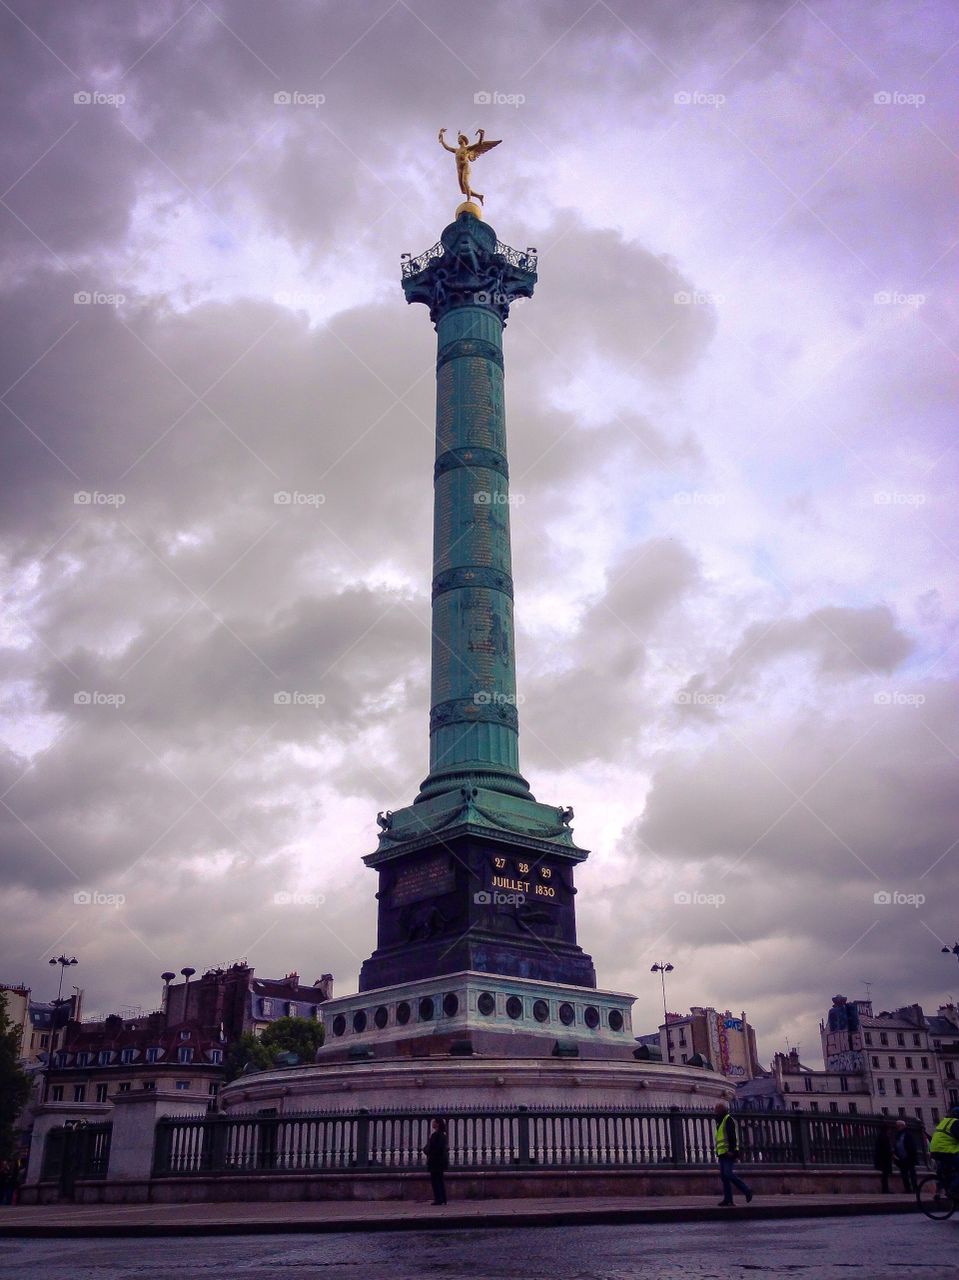 Columna de Julio, Plaza de la Bastilla (Paris - France)